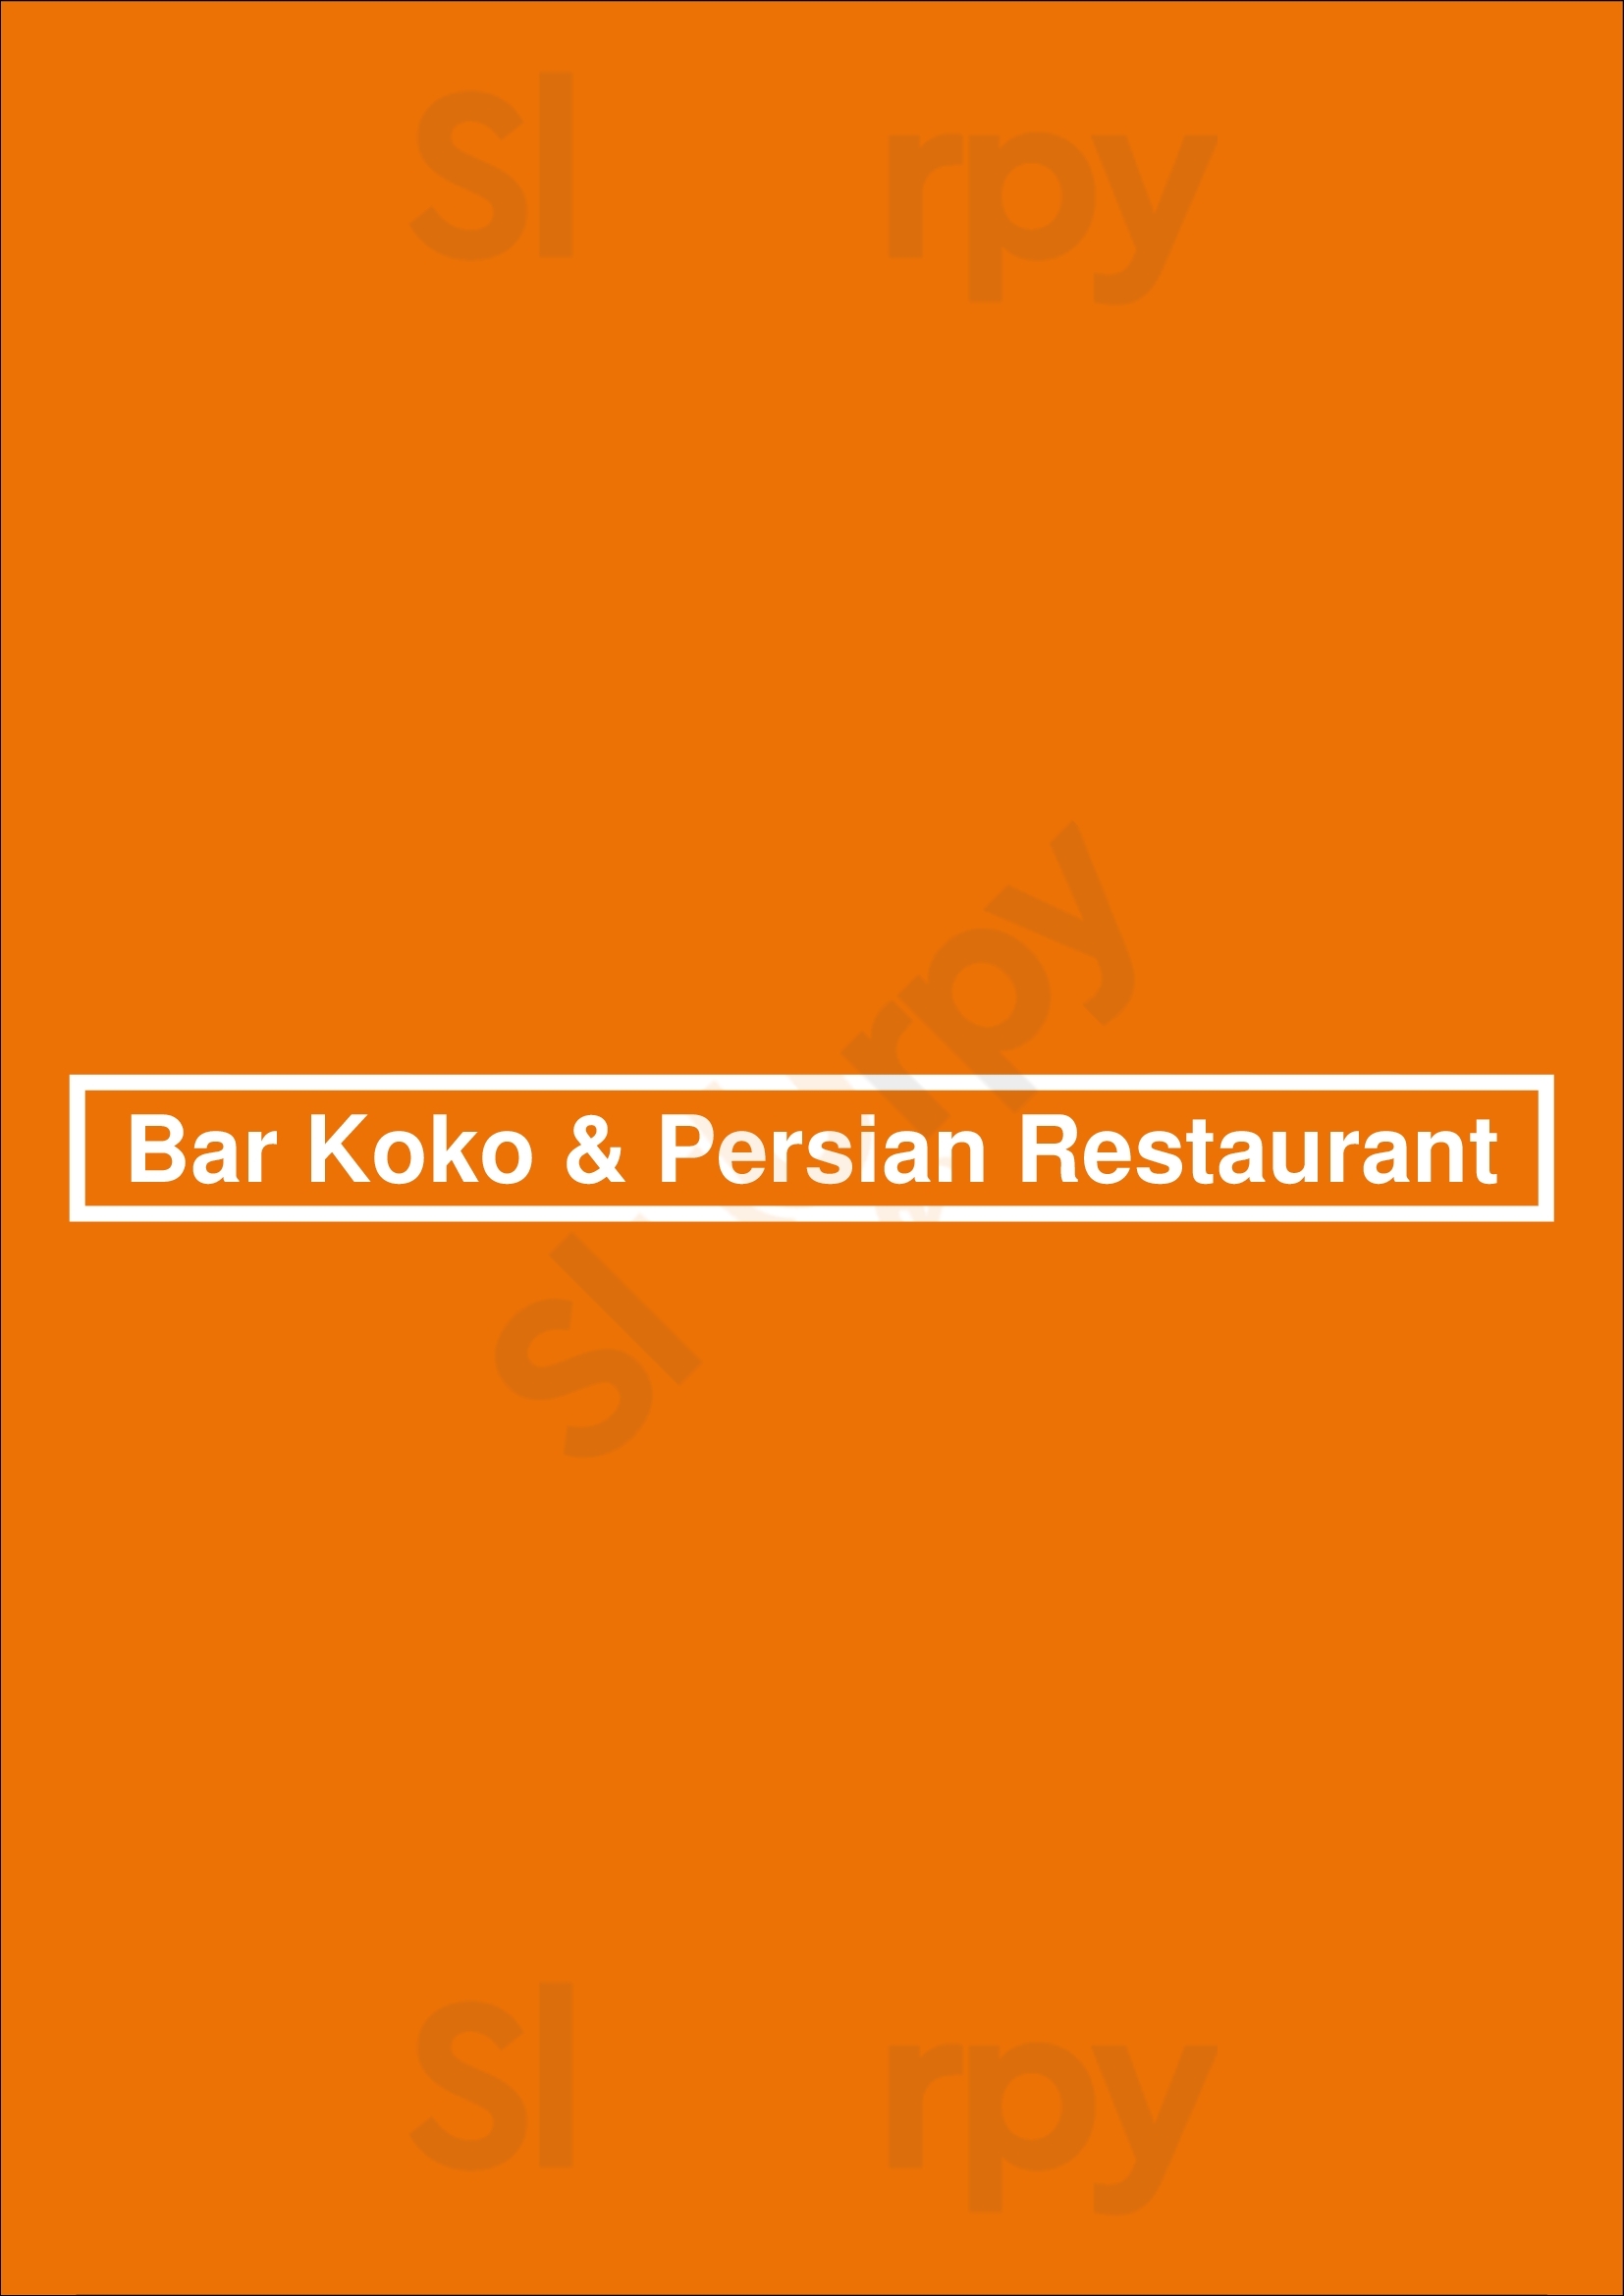 Bar Koko & Persian Restaurant Honolulu Menu - 1